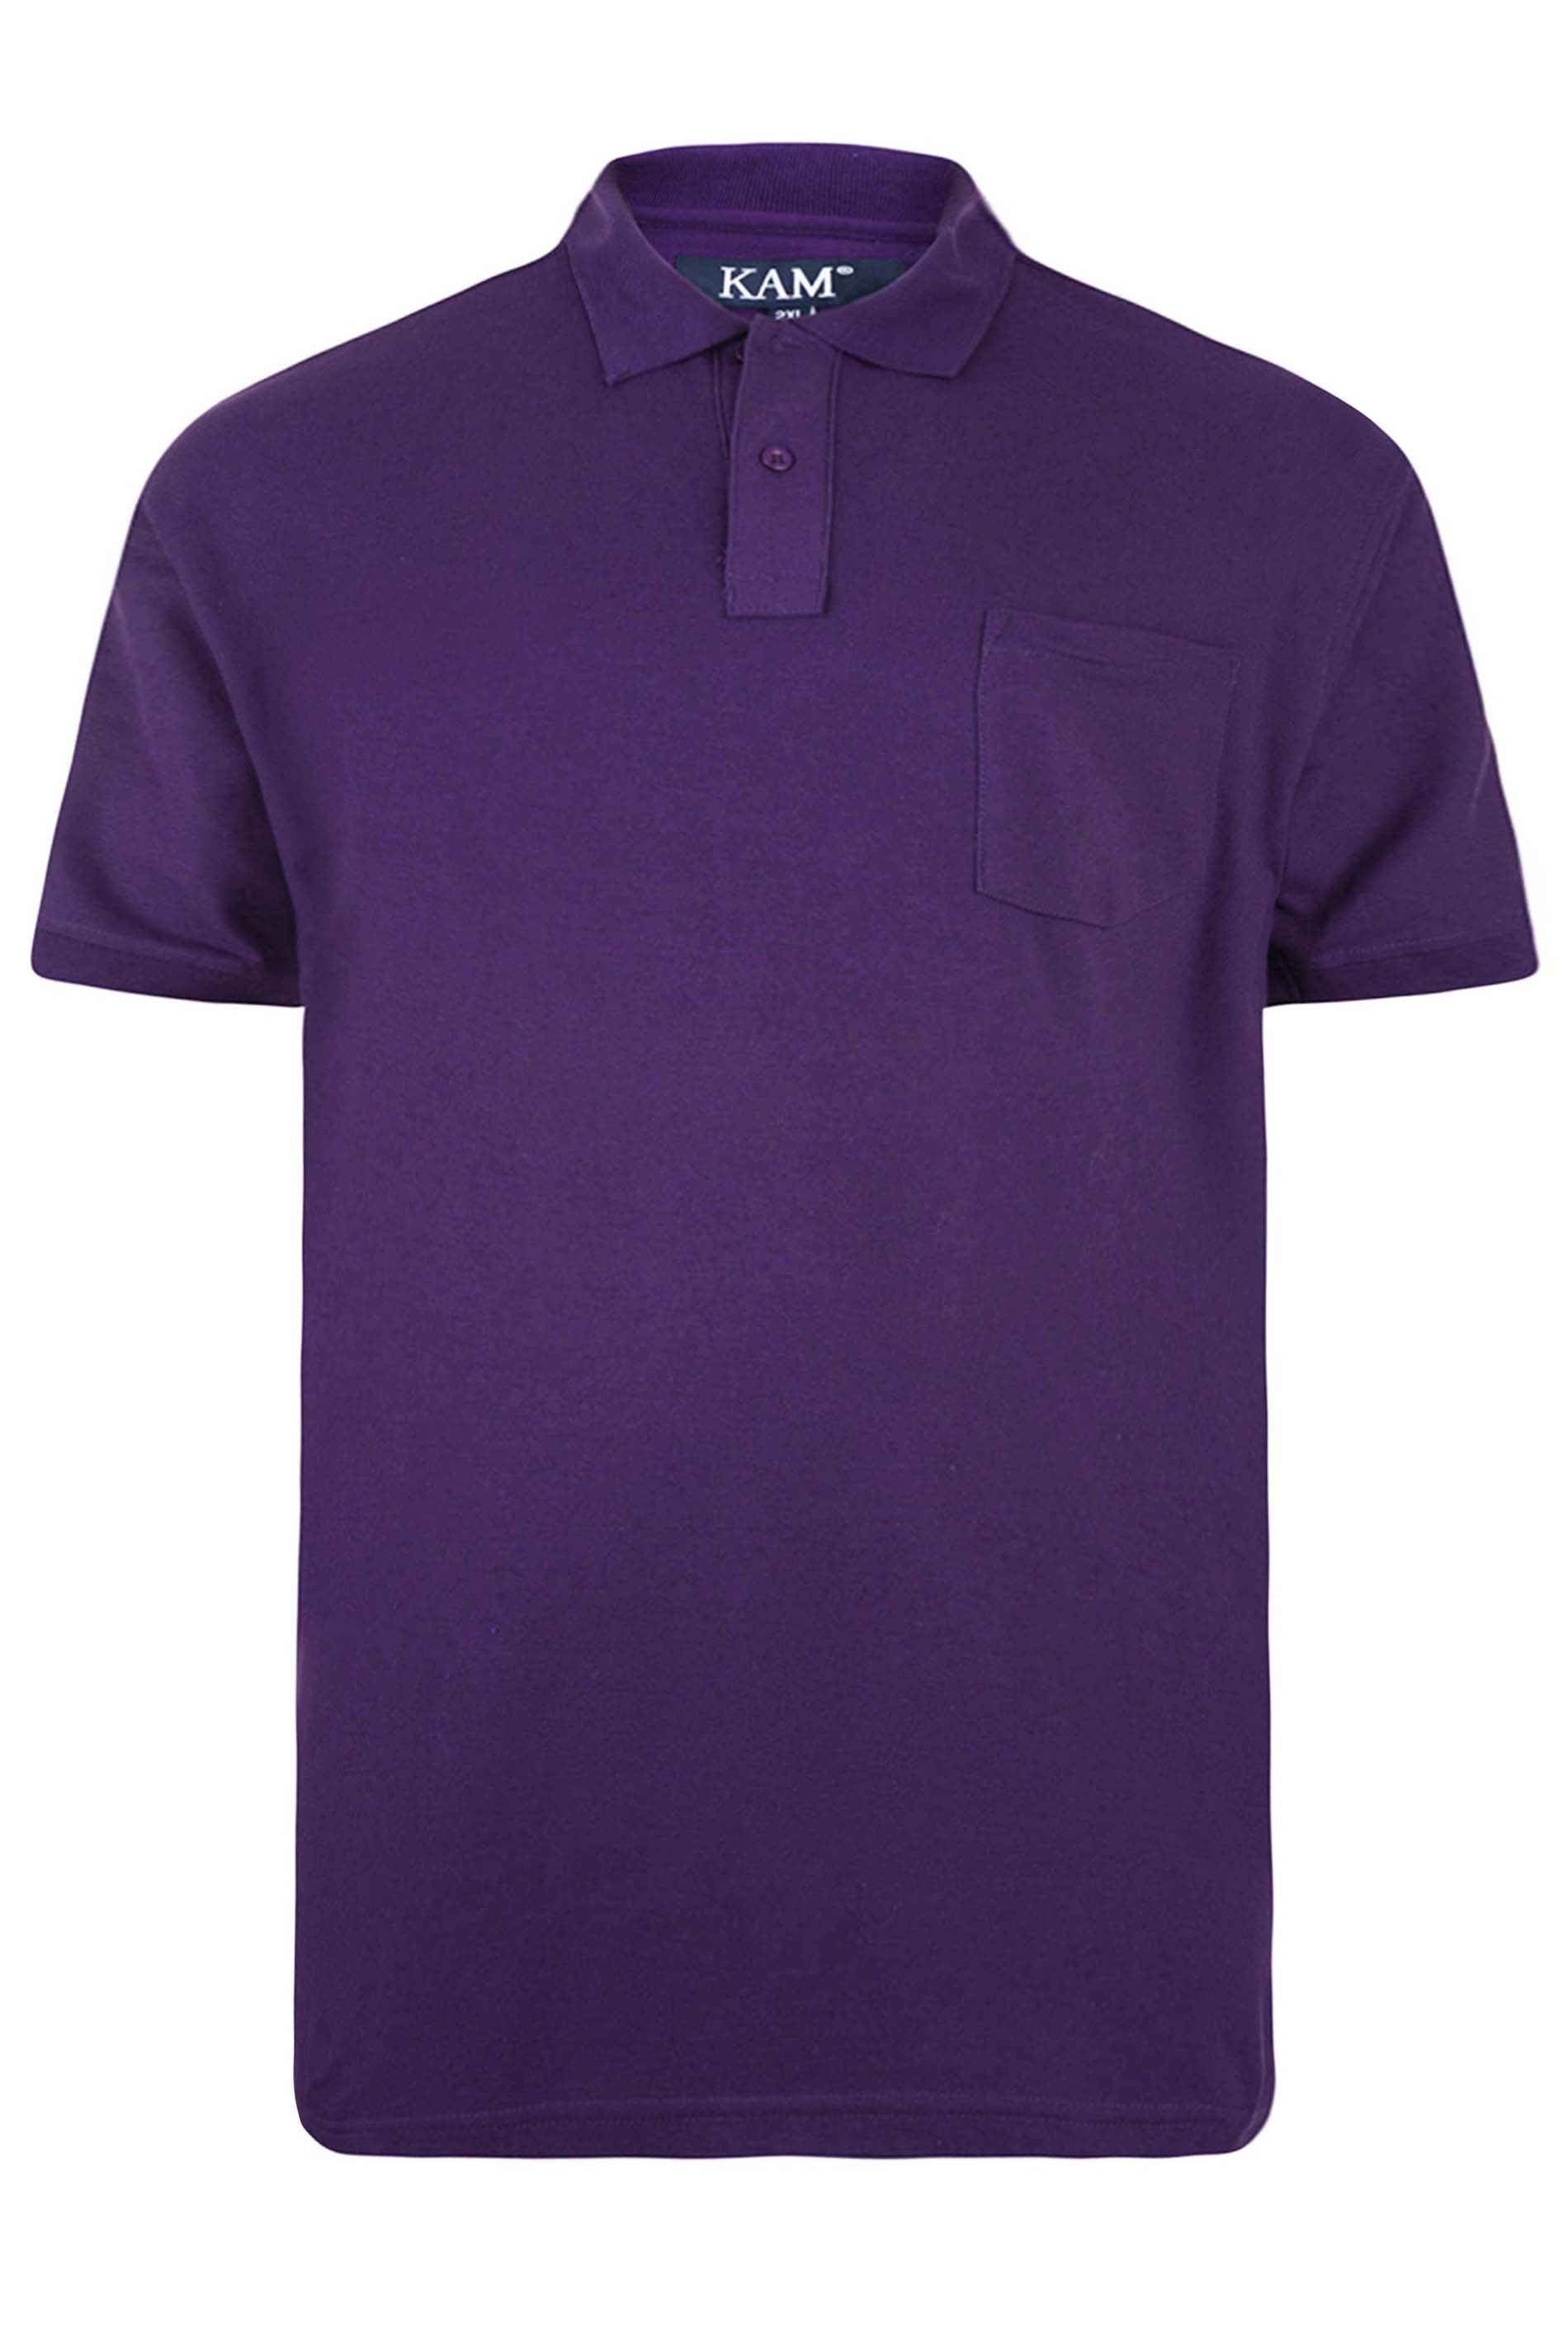 KAM Purple Pocket Polo Shirt | BadRhino 2